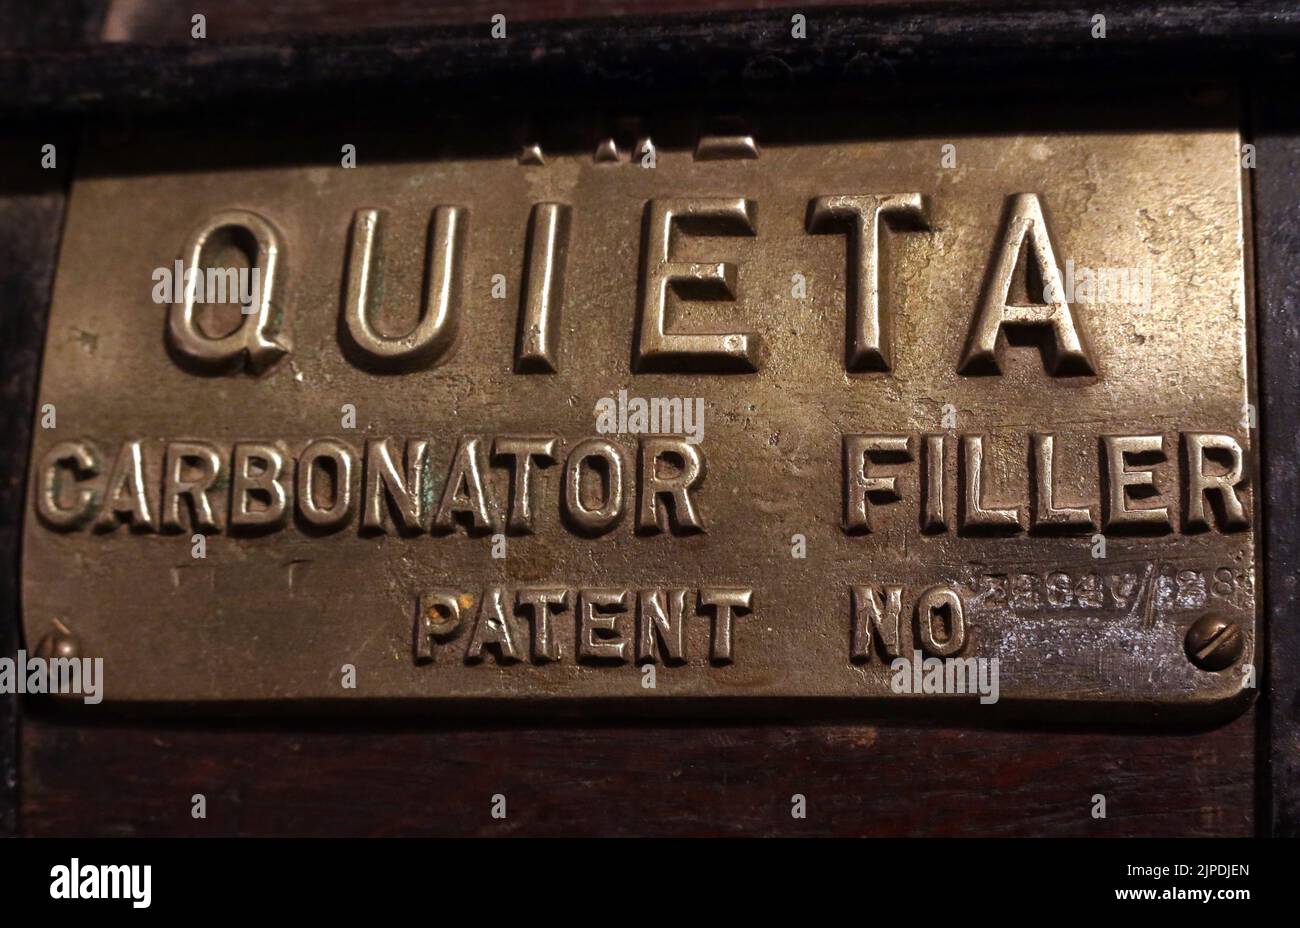 Herstellerschild, Quieta Patentkarbonator, Füllmaschine für Apfelwein, Apfelweinhersteller, Hereford, England, Großbritannien Stockfoto